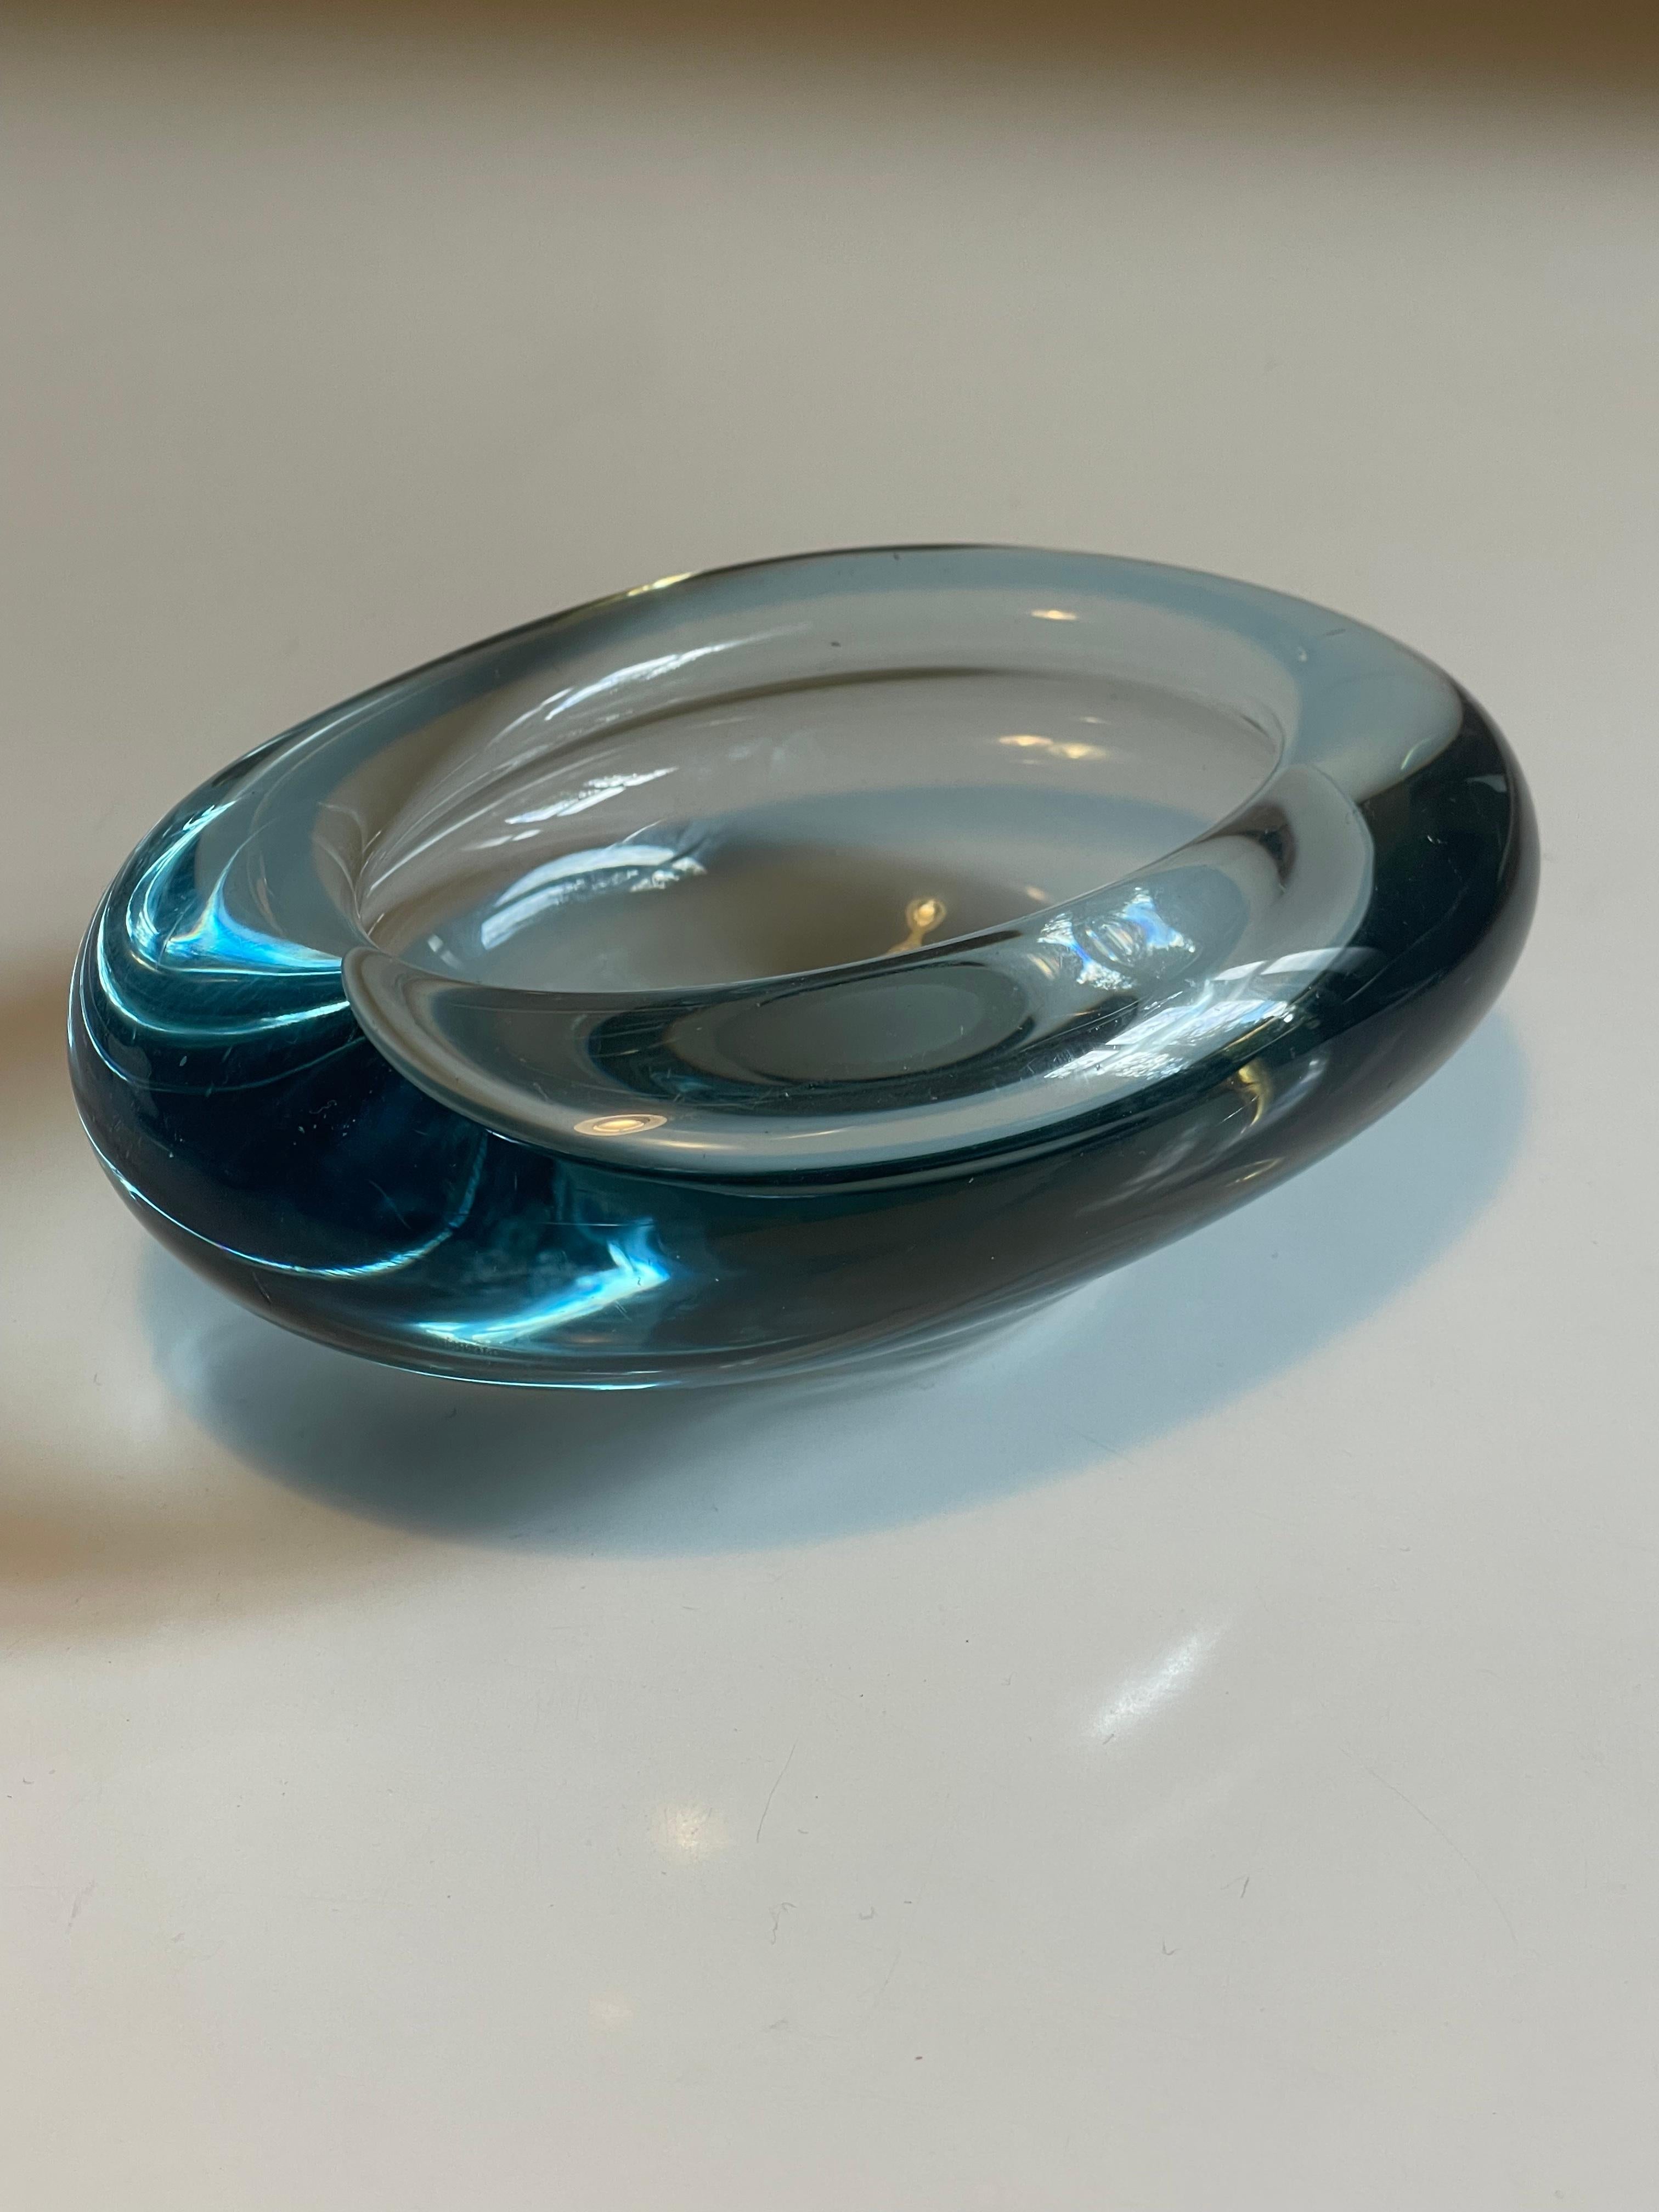 Un superbe bol scandinave en verre bleu Akva (aqua). Fabriqué par Holmegaard au Danemark et conçu par Per Lutken dans les années 1950, numéro de modèle 15735, signé sur la base. Magnifique en tant qu'objet autonome pour introduire les éléments de